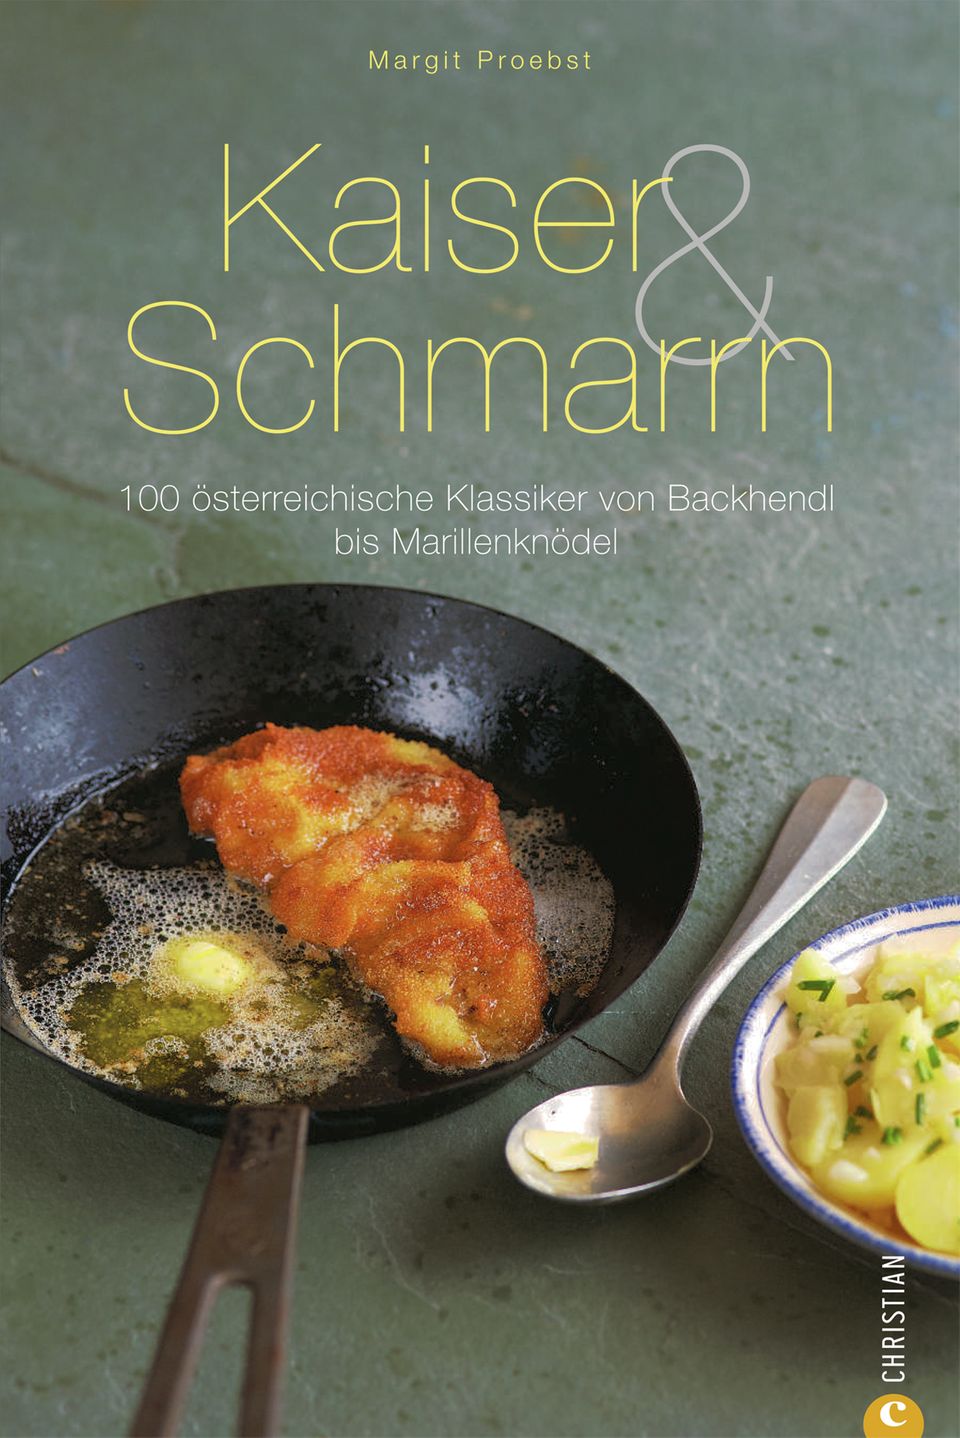 Buch: "Kaiser & Schmarrn" von Margit Proebst